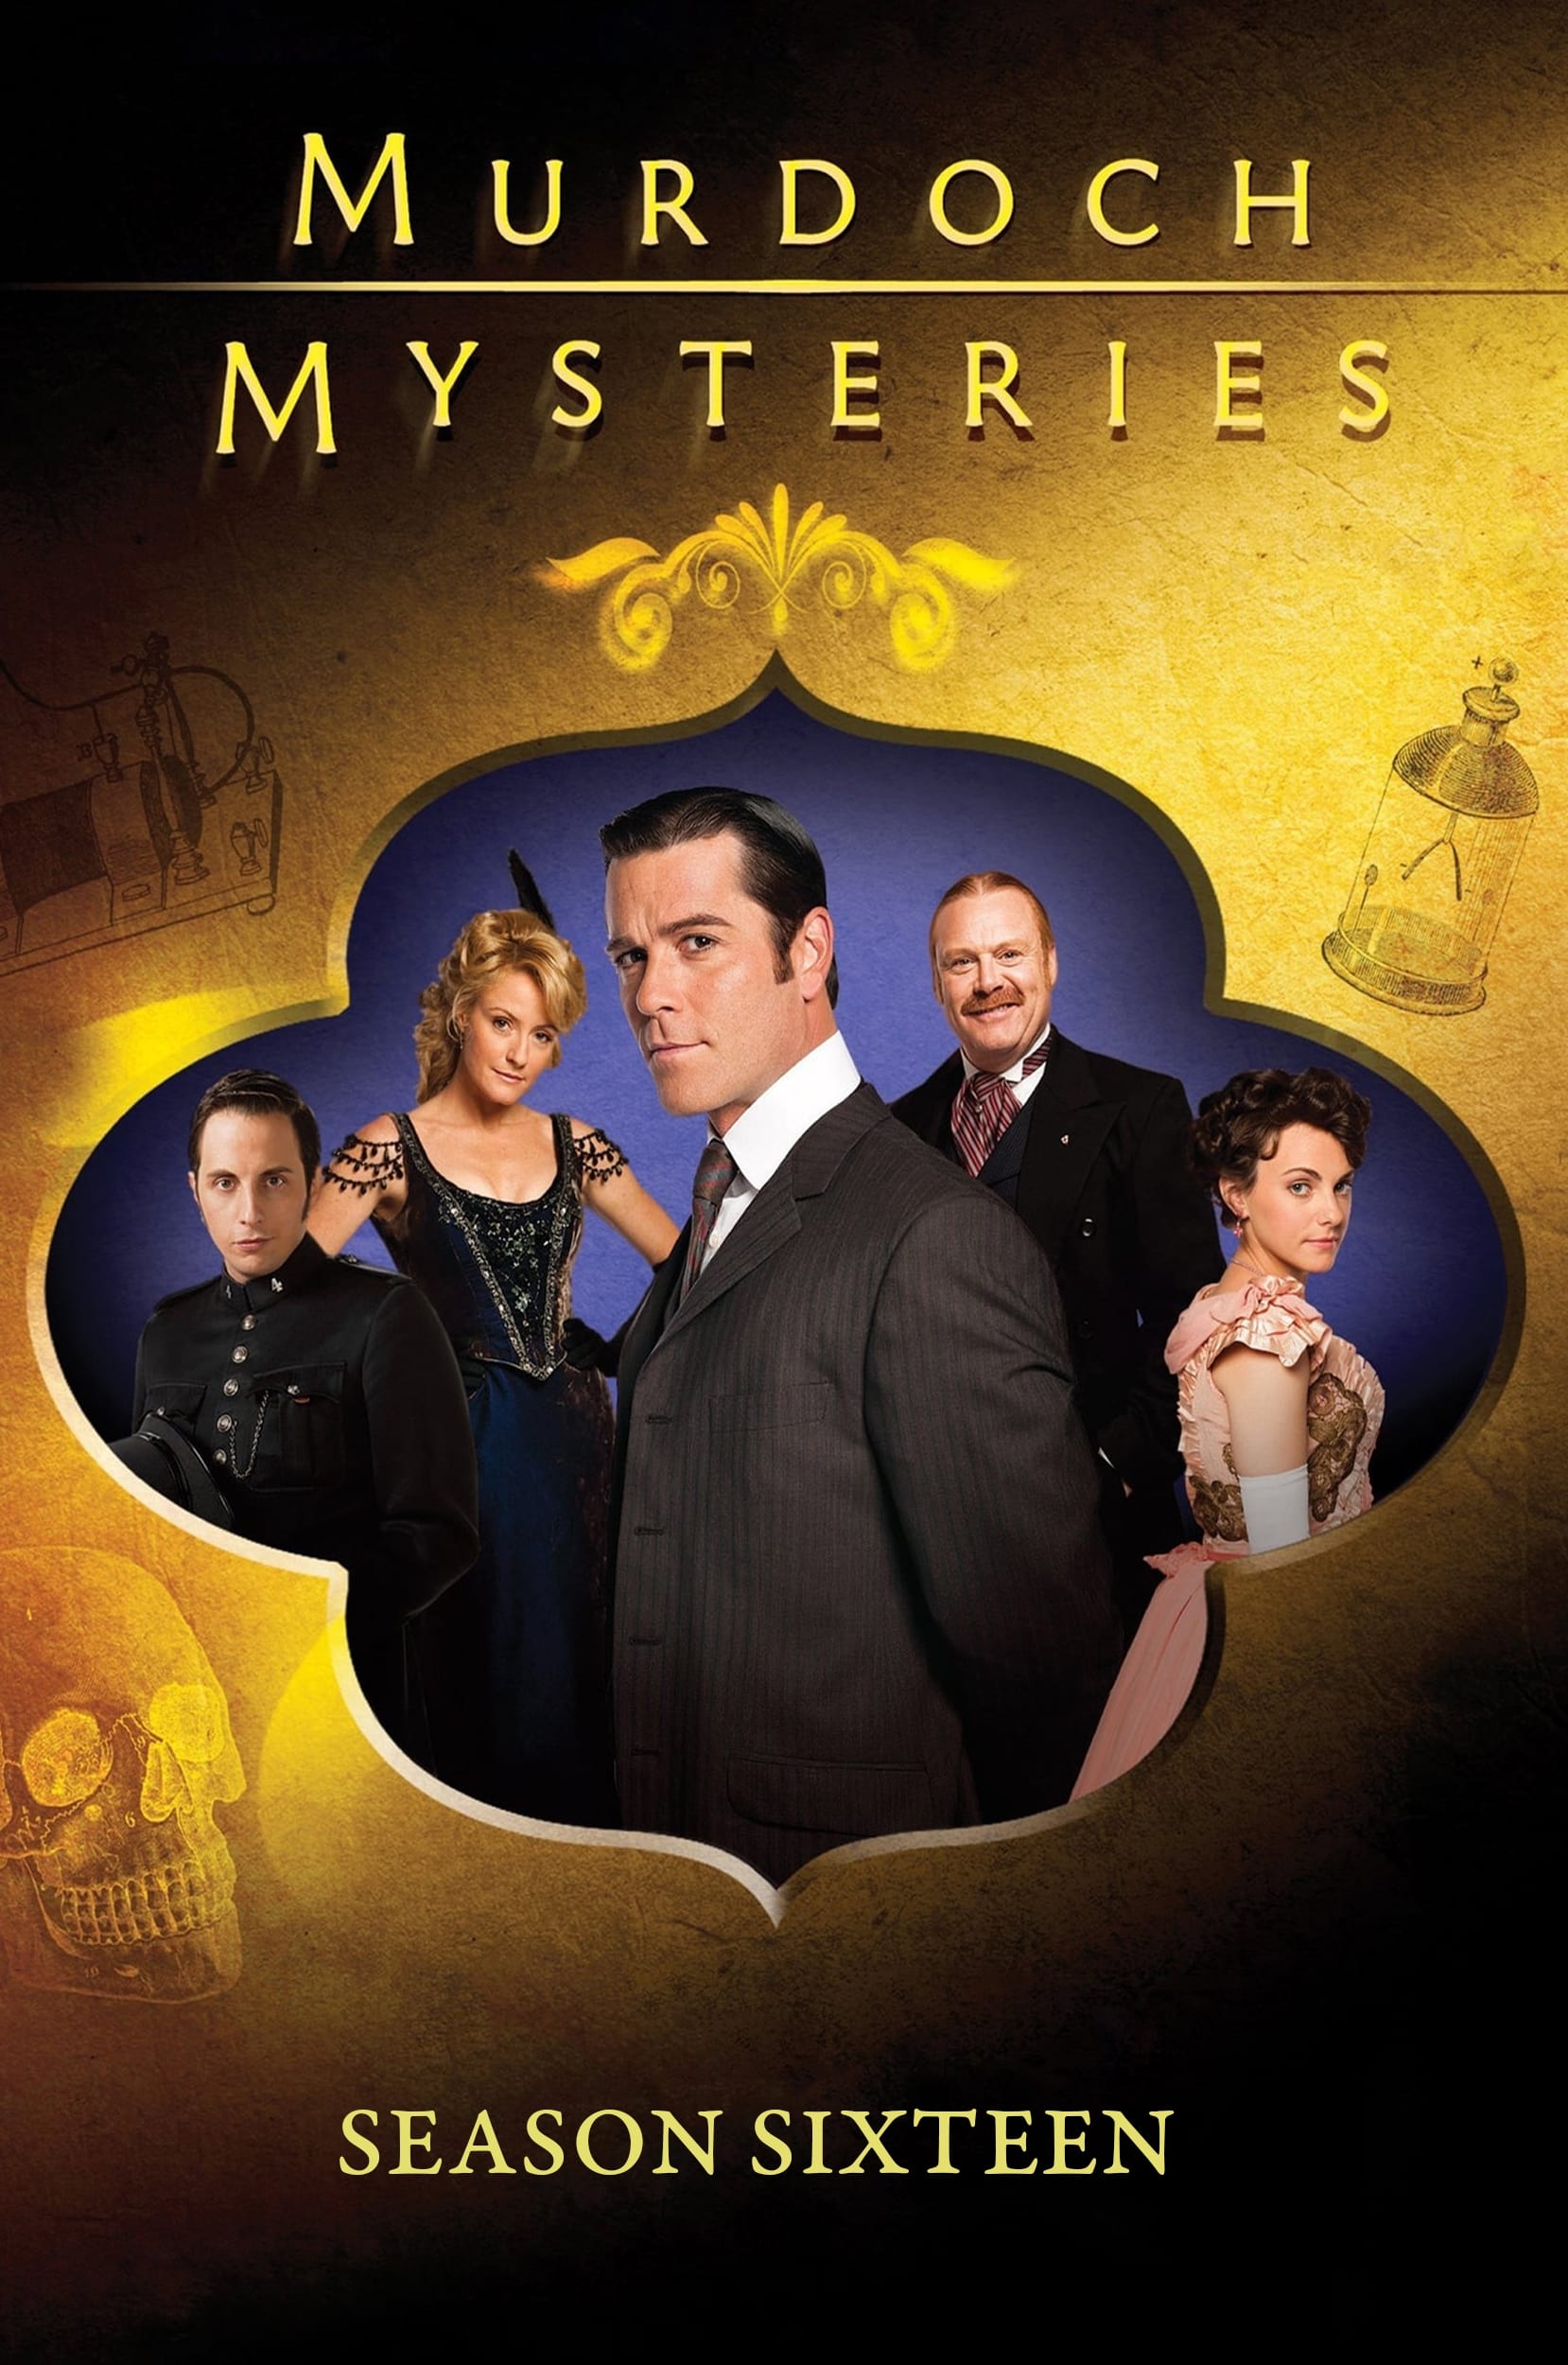 Murdoch Mysteries (2008) S16pt3 E17->E24 NLsubs